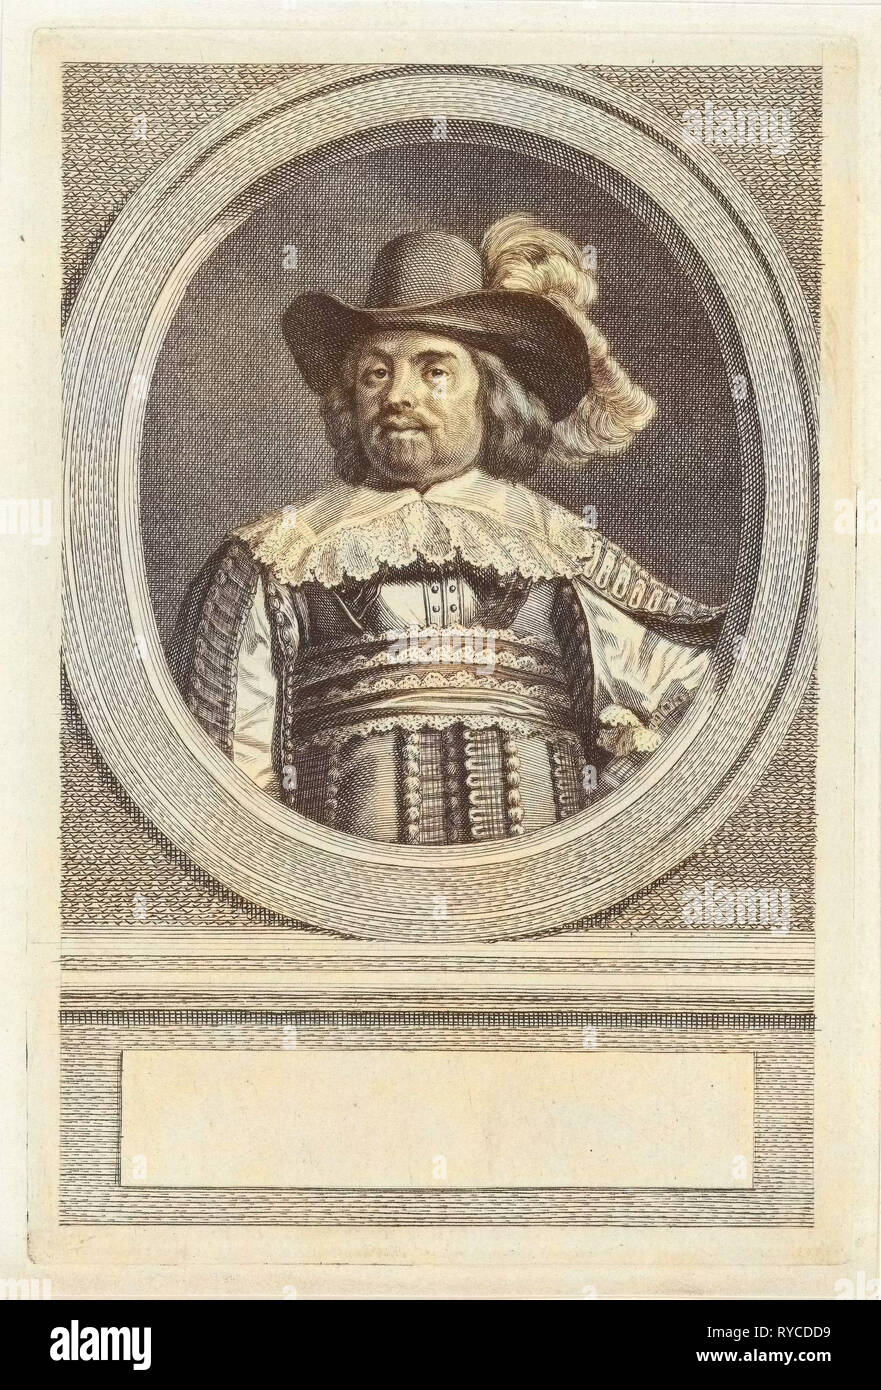 Portrait of Roelof Bicker, Jacob Houbraken, 1747 - 1759 Stock Photo